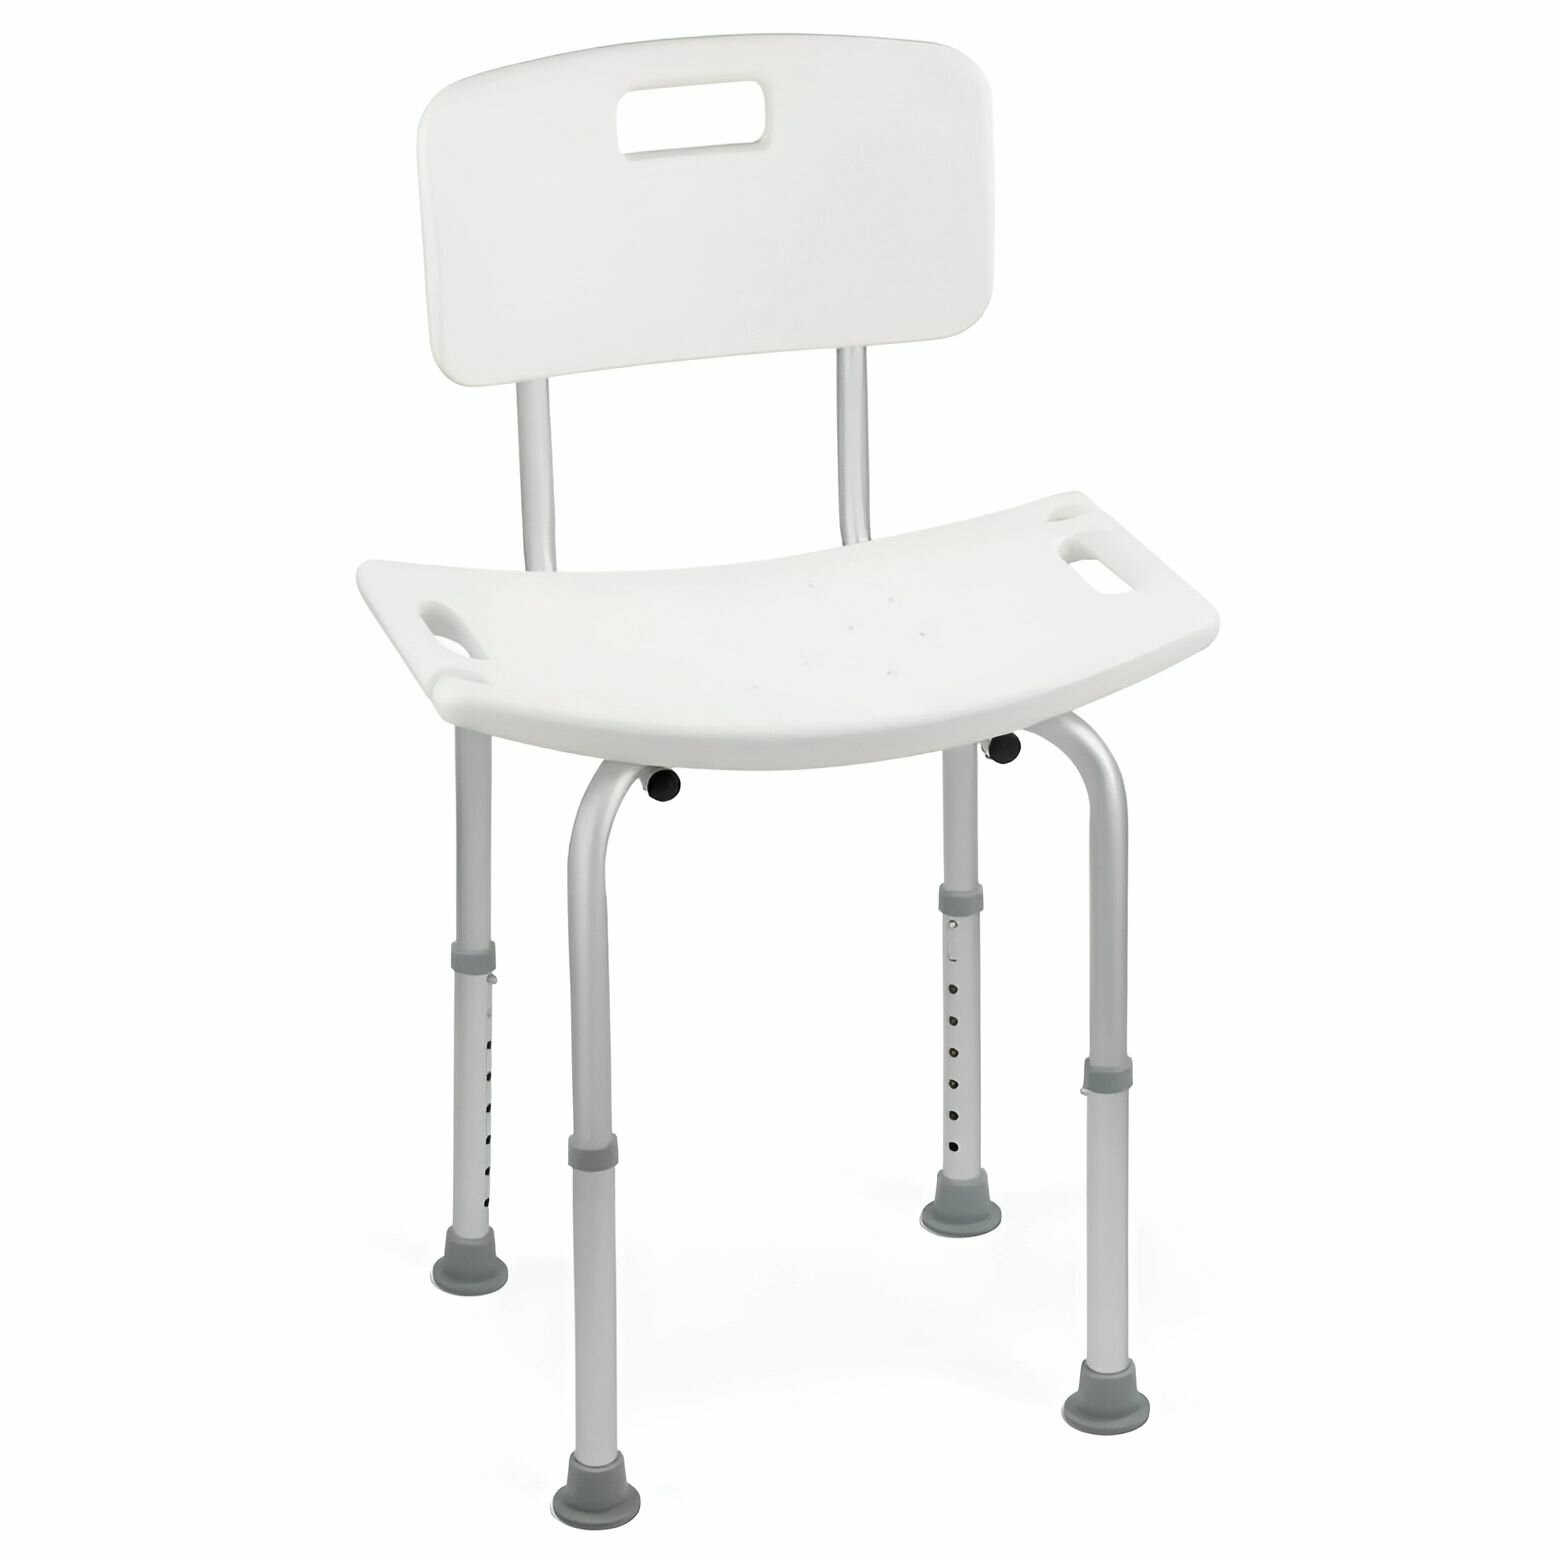 Санитарный стул со спинкой сиденье титан для ванны и душевой кабины, для инвалидов и пожилых